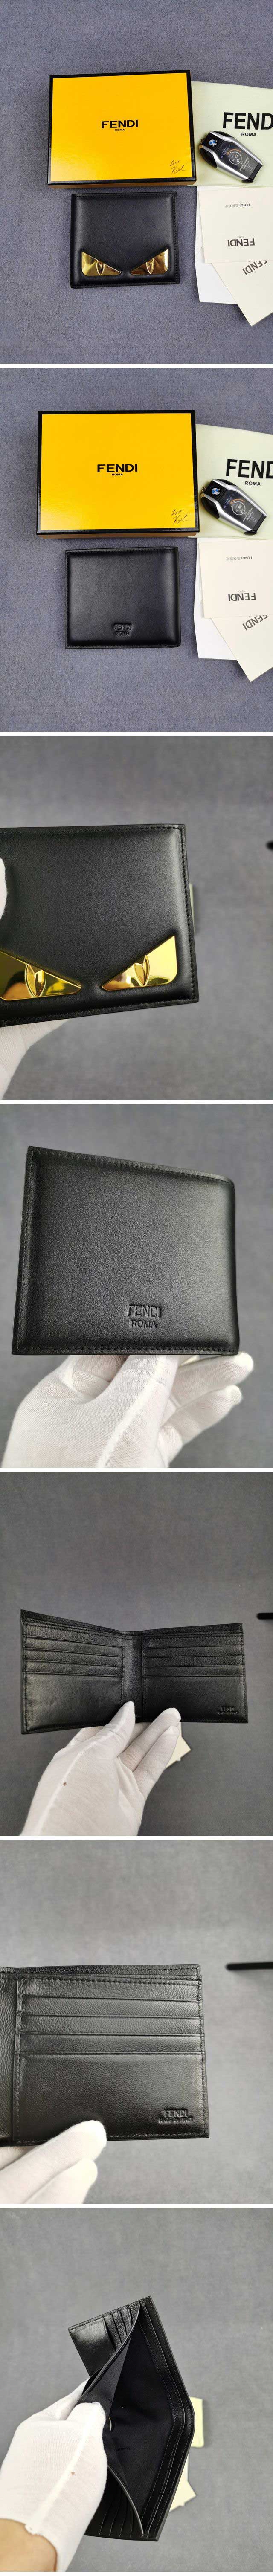 Fendi Gold Bag Bugs Design Wallet フェンディ ゴールド バッグ バグズ デザイン ウォレット